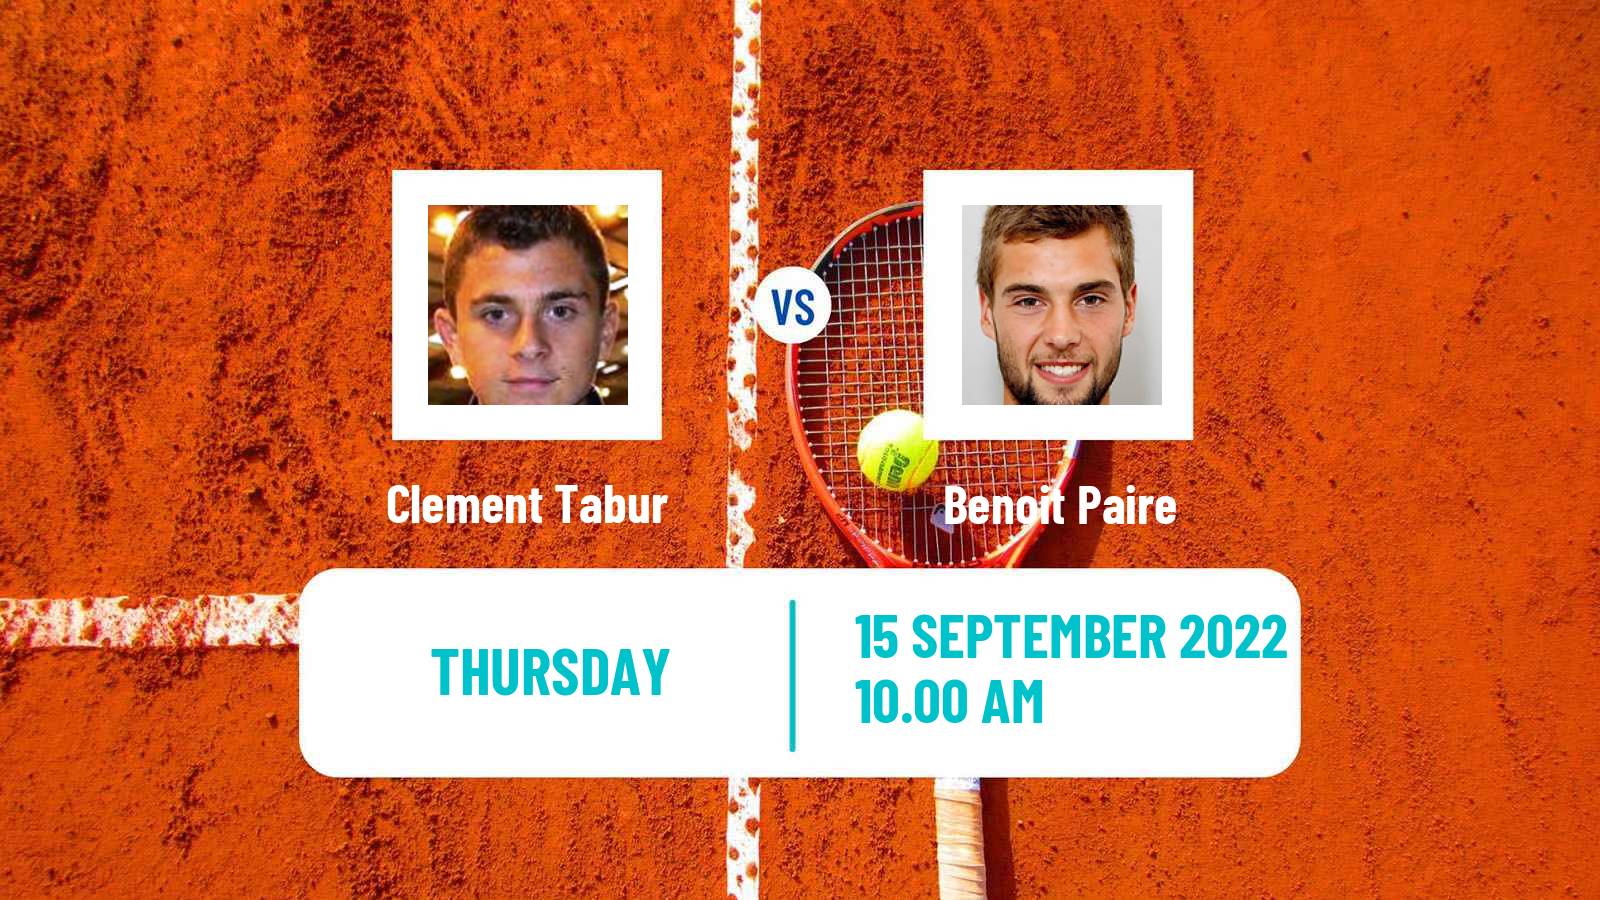 Tennis ATP Challenger Clement Tabur - Benoit Paire